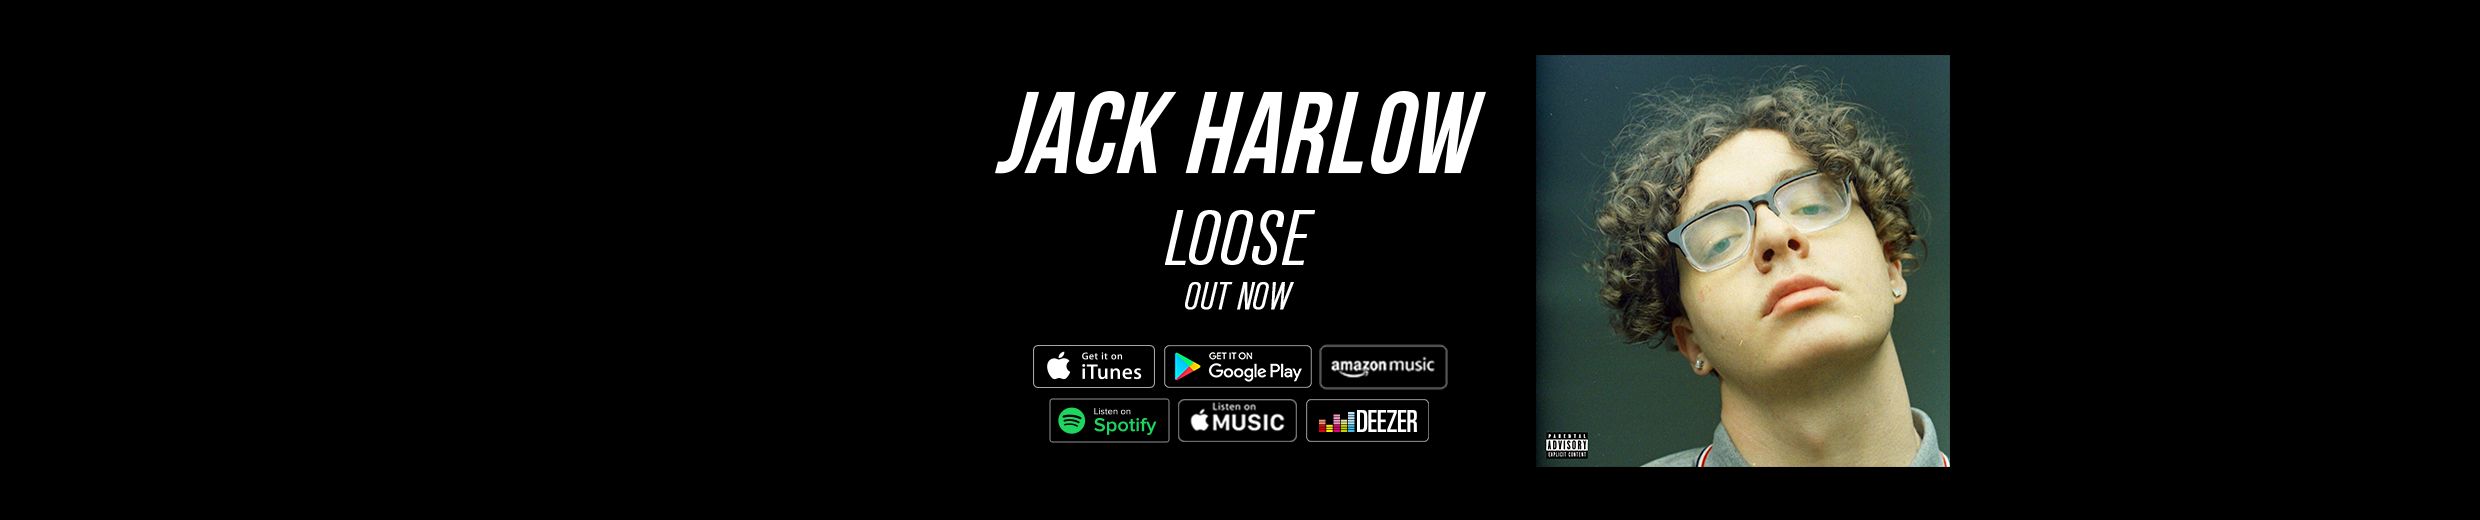 jack harlow loose zip itunes download